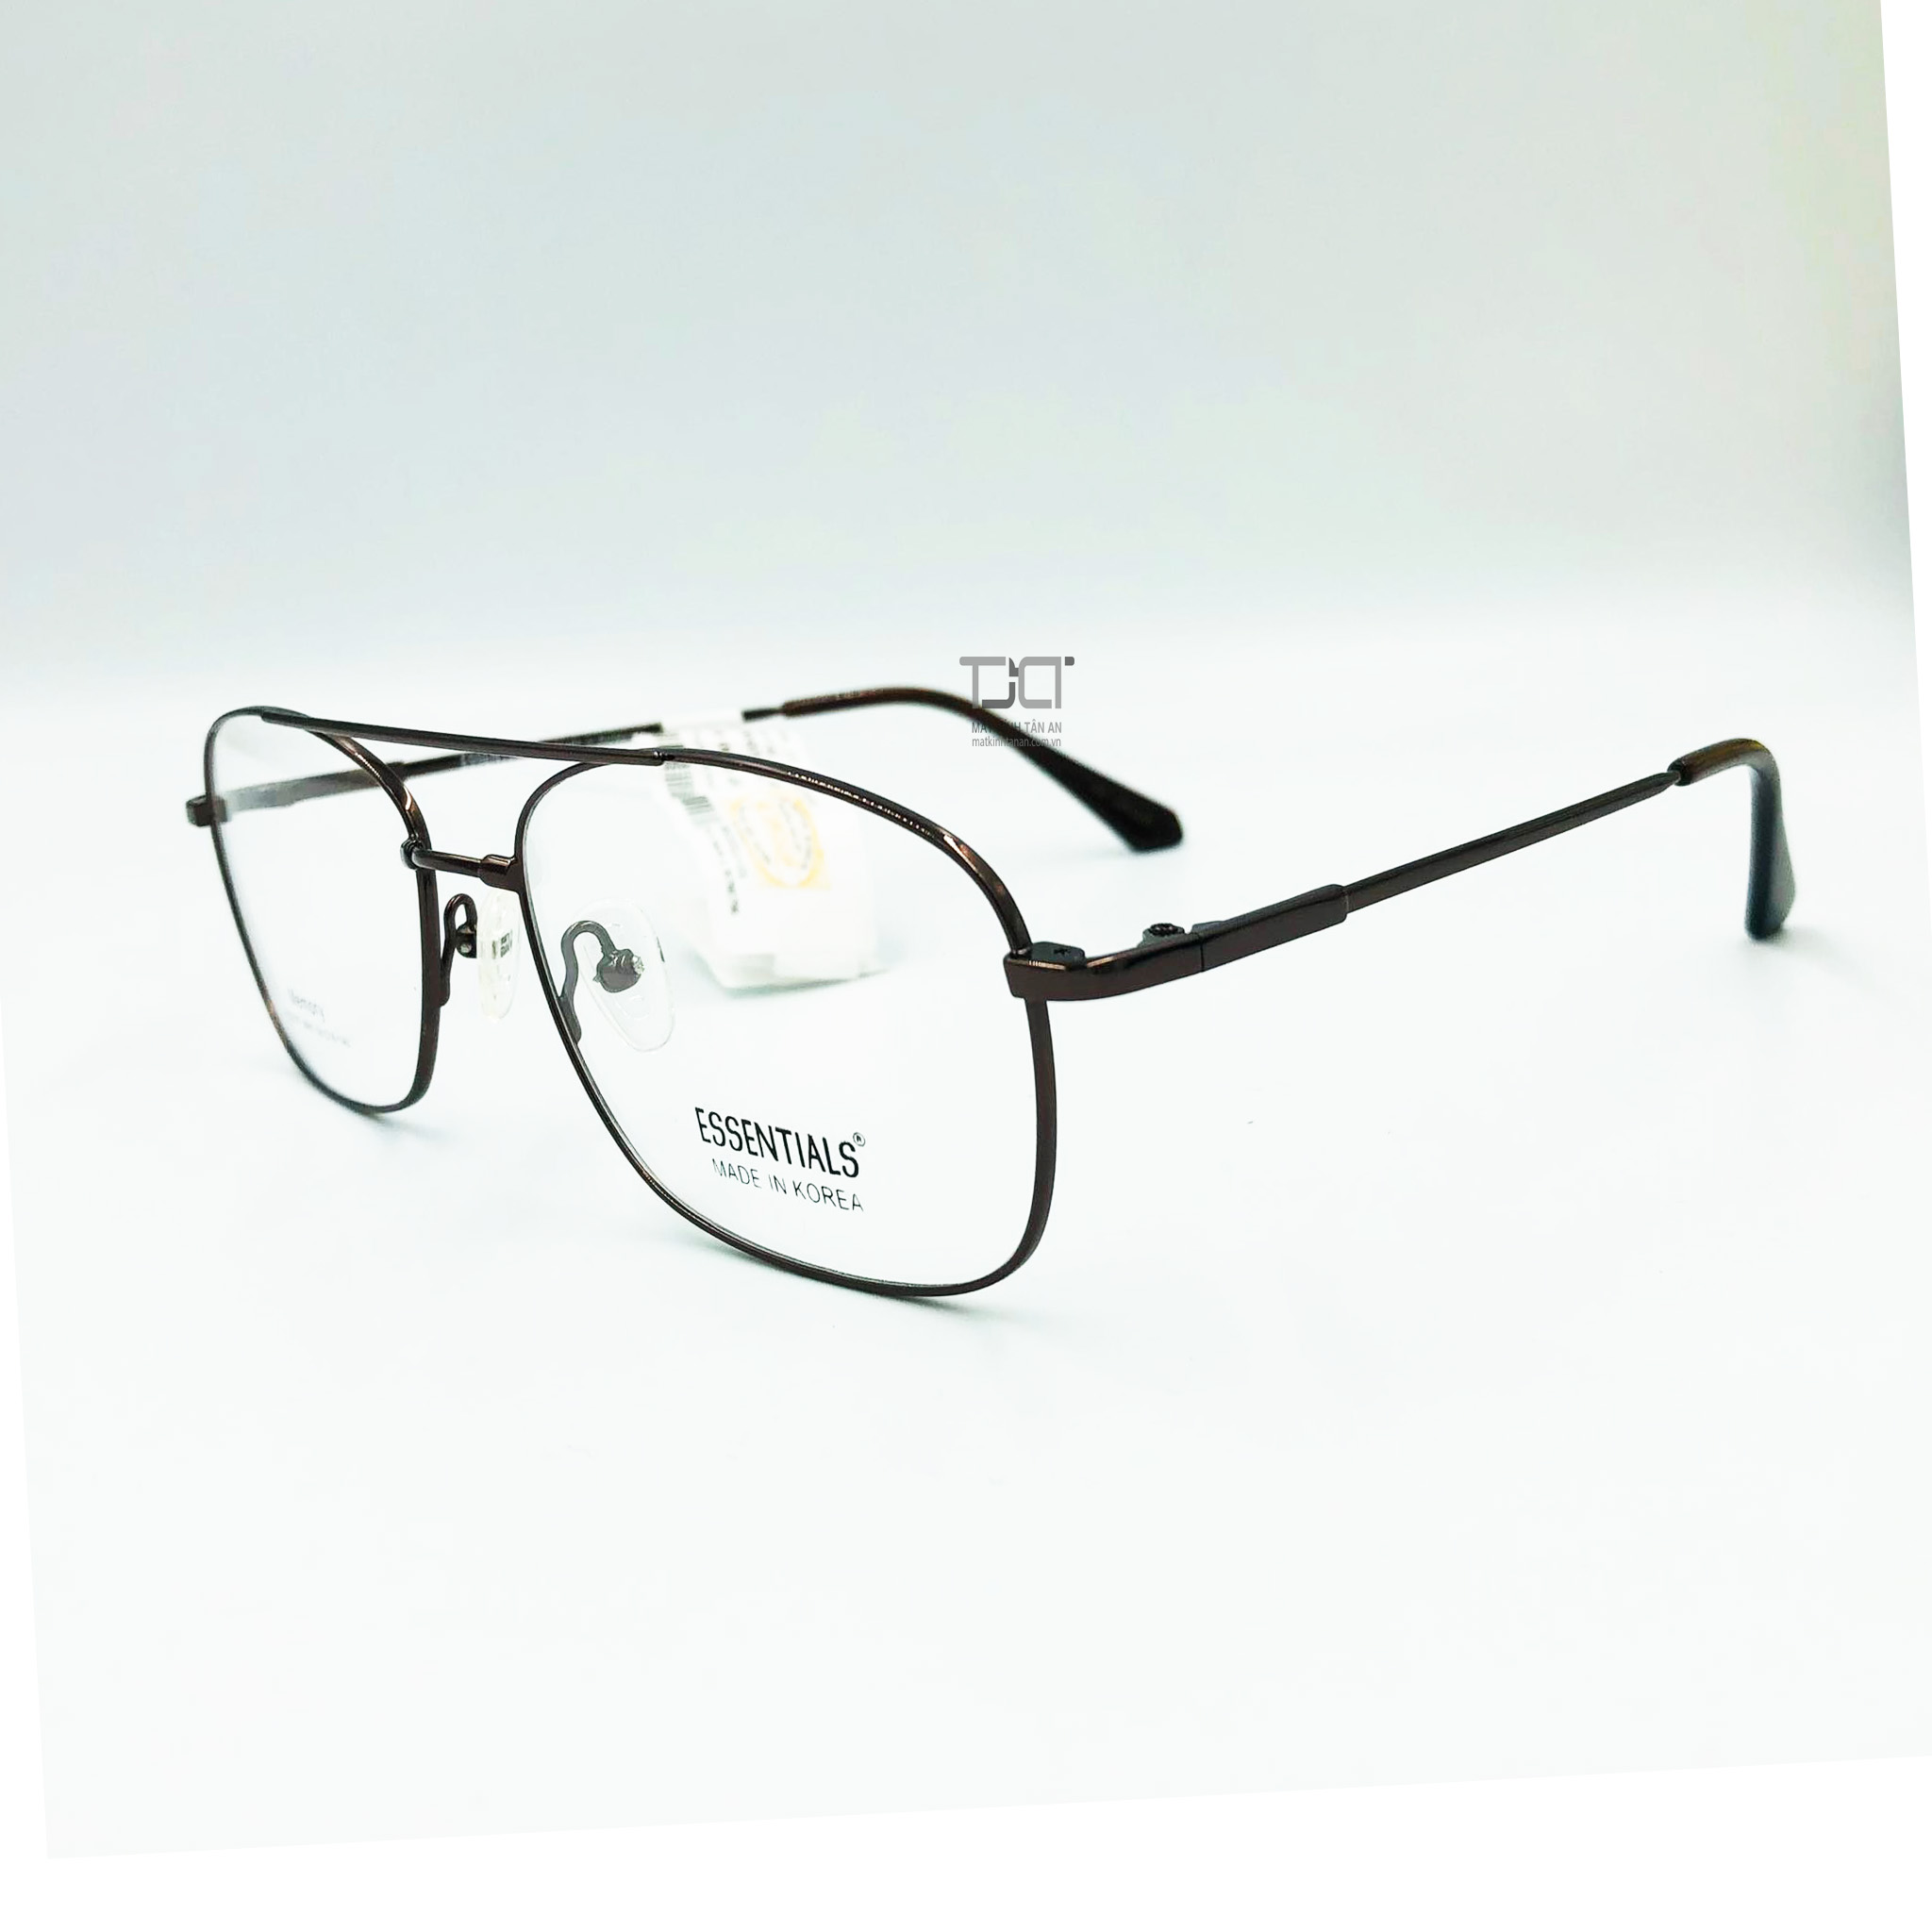 Gọng kính nam, 2 cầu kính, titanium, gọng dẽo, hàng chính hãng essentials E50007